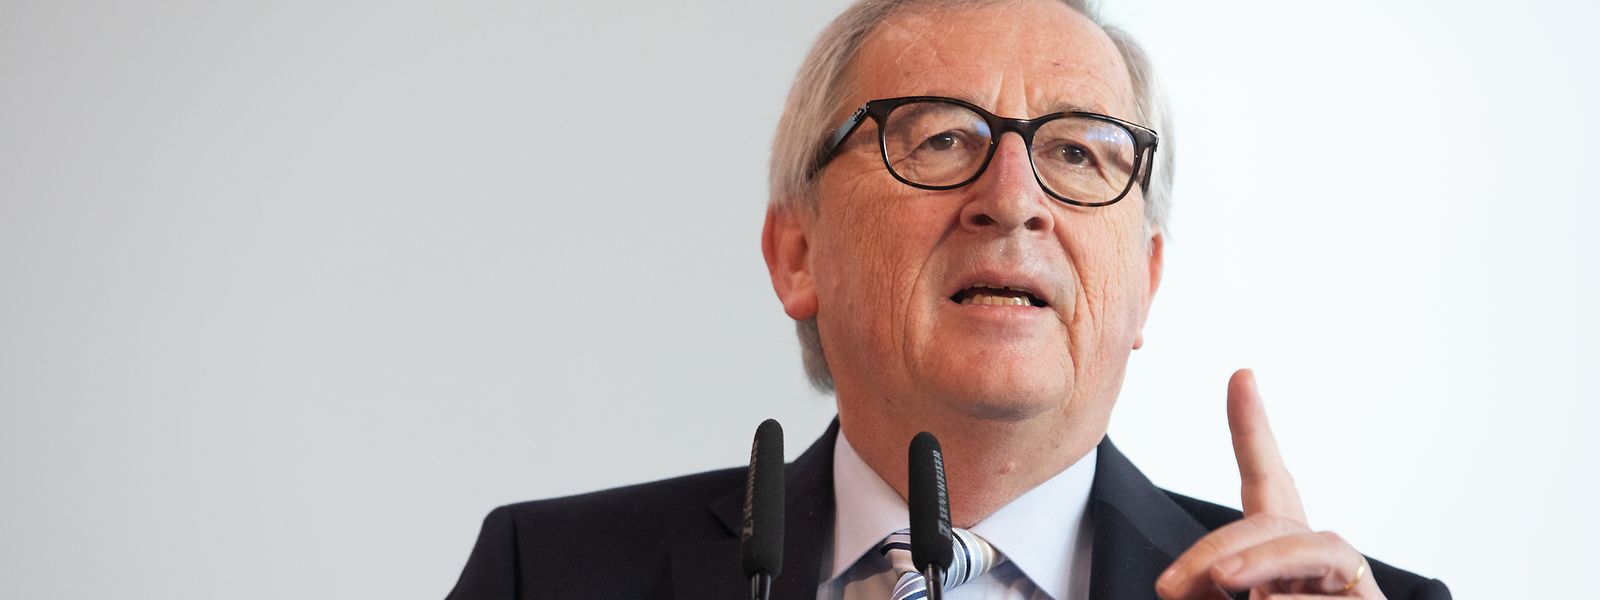 Der scheidende Kommissionspräsident Jean-Claude Juncker gab der nächsten Kommission eine Liste von zehn unerfüllten Aufgaben mit auf den Weg.